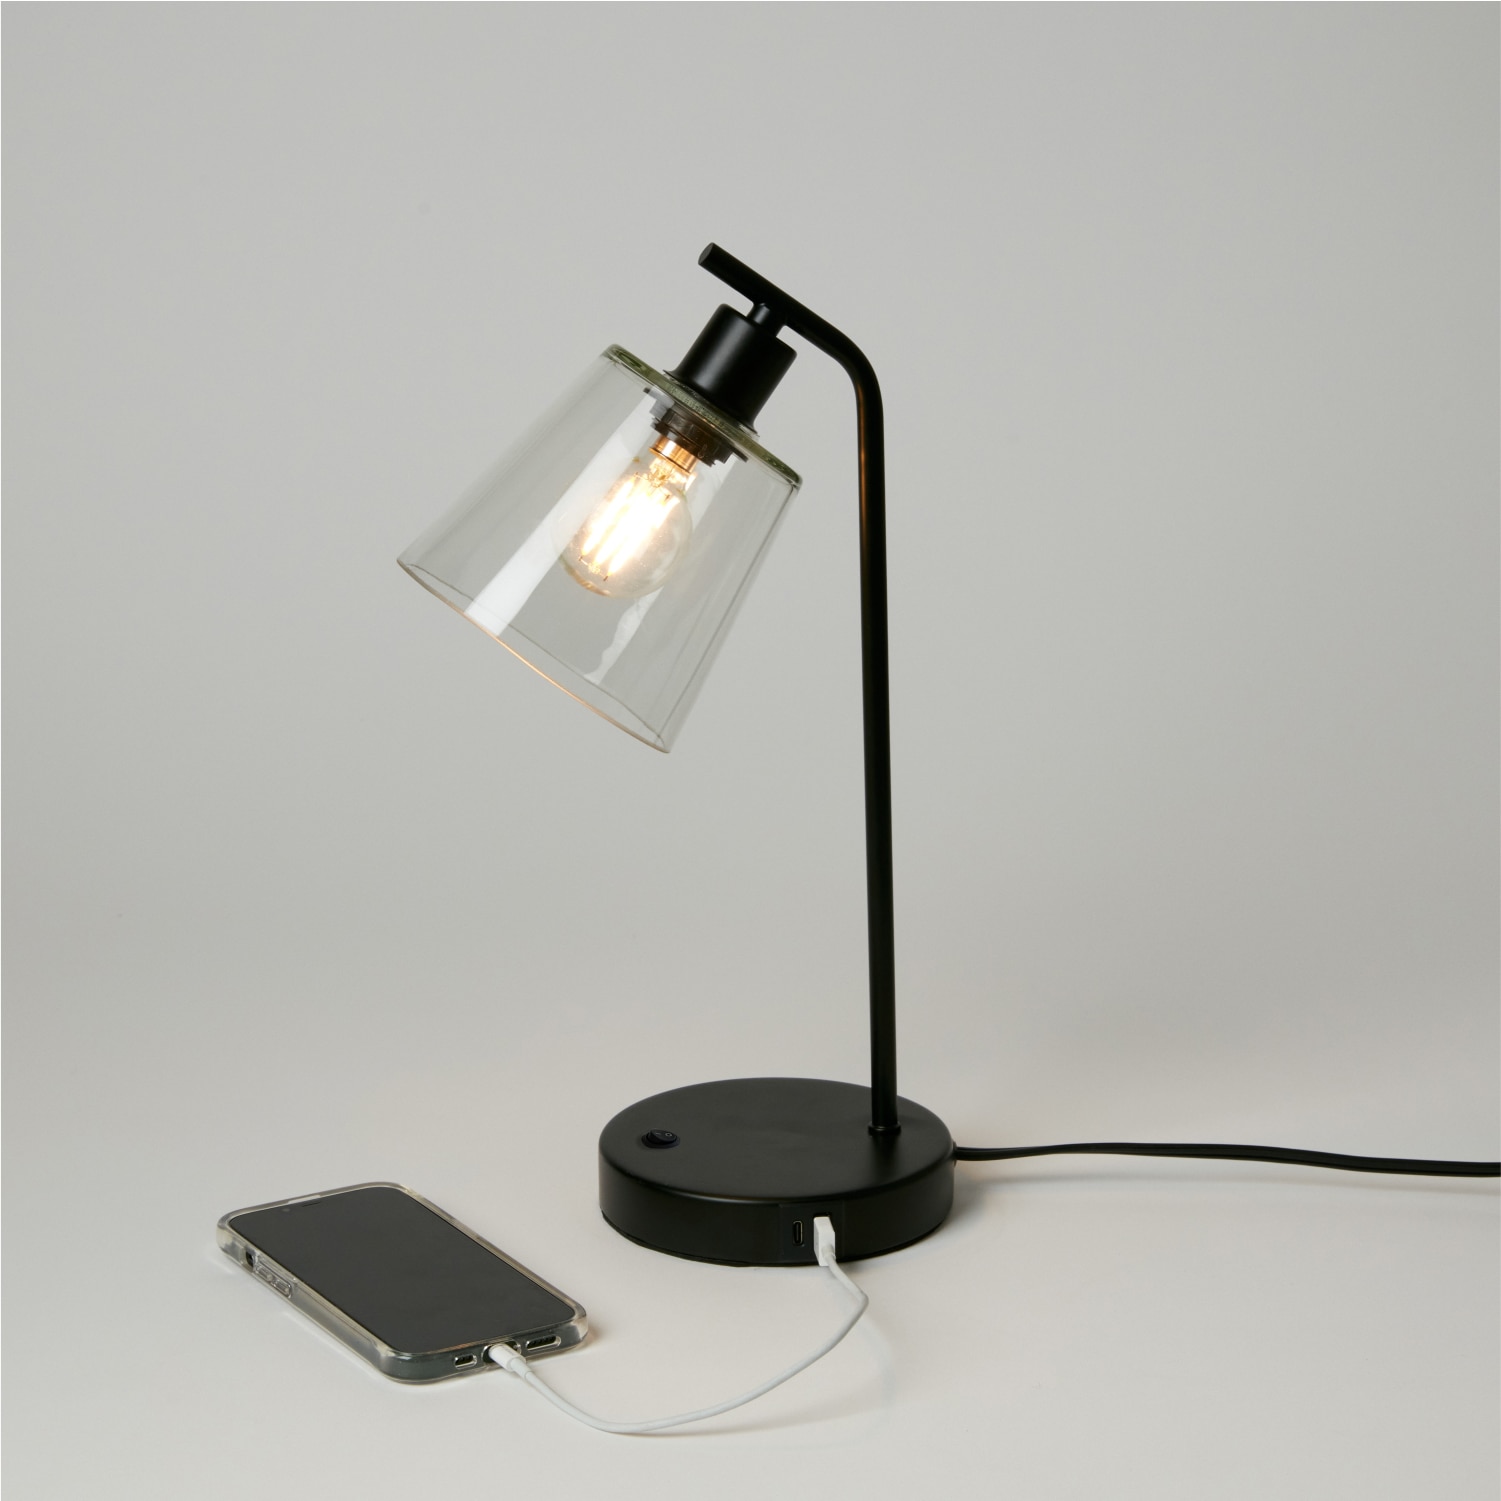 Dormify Ari Charging Desk Lamp